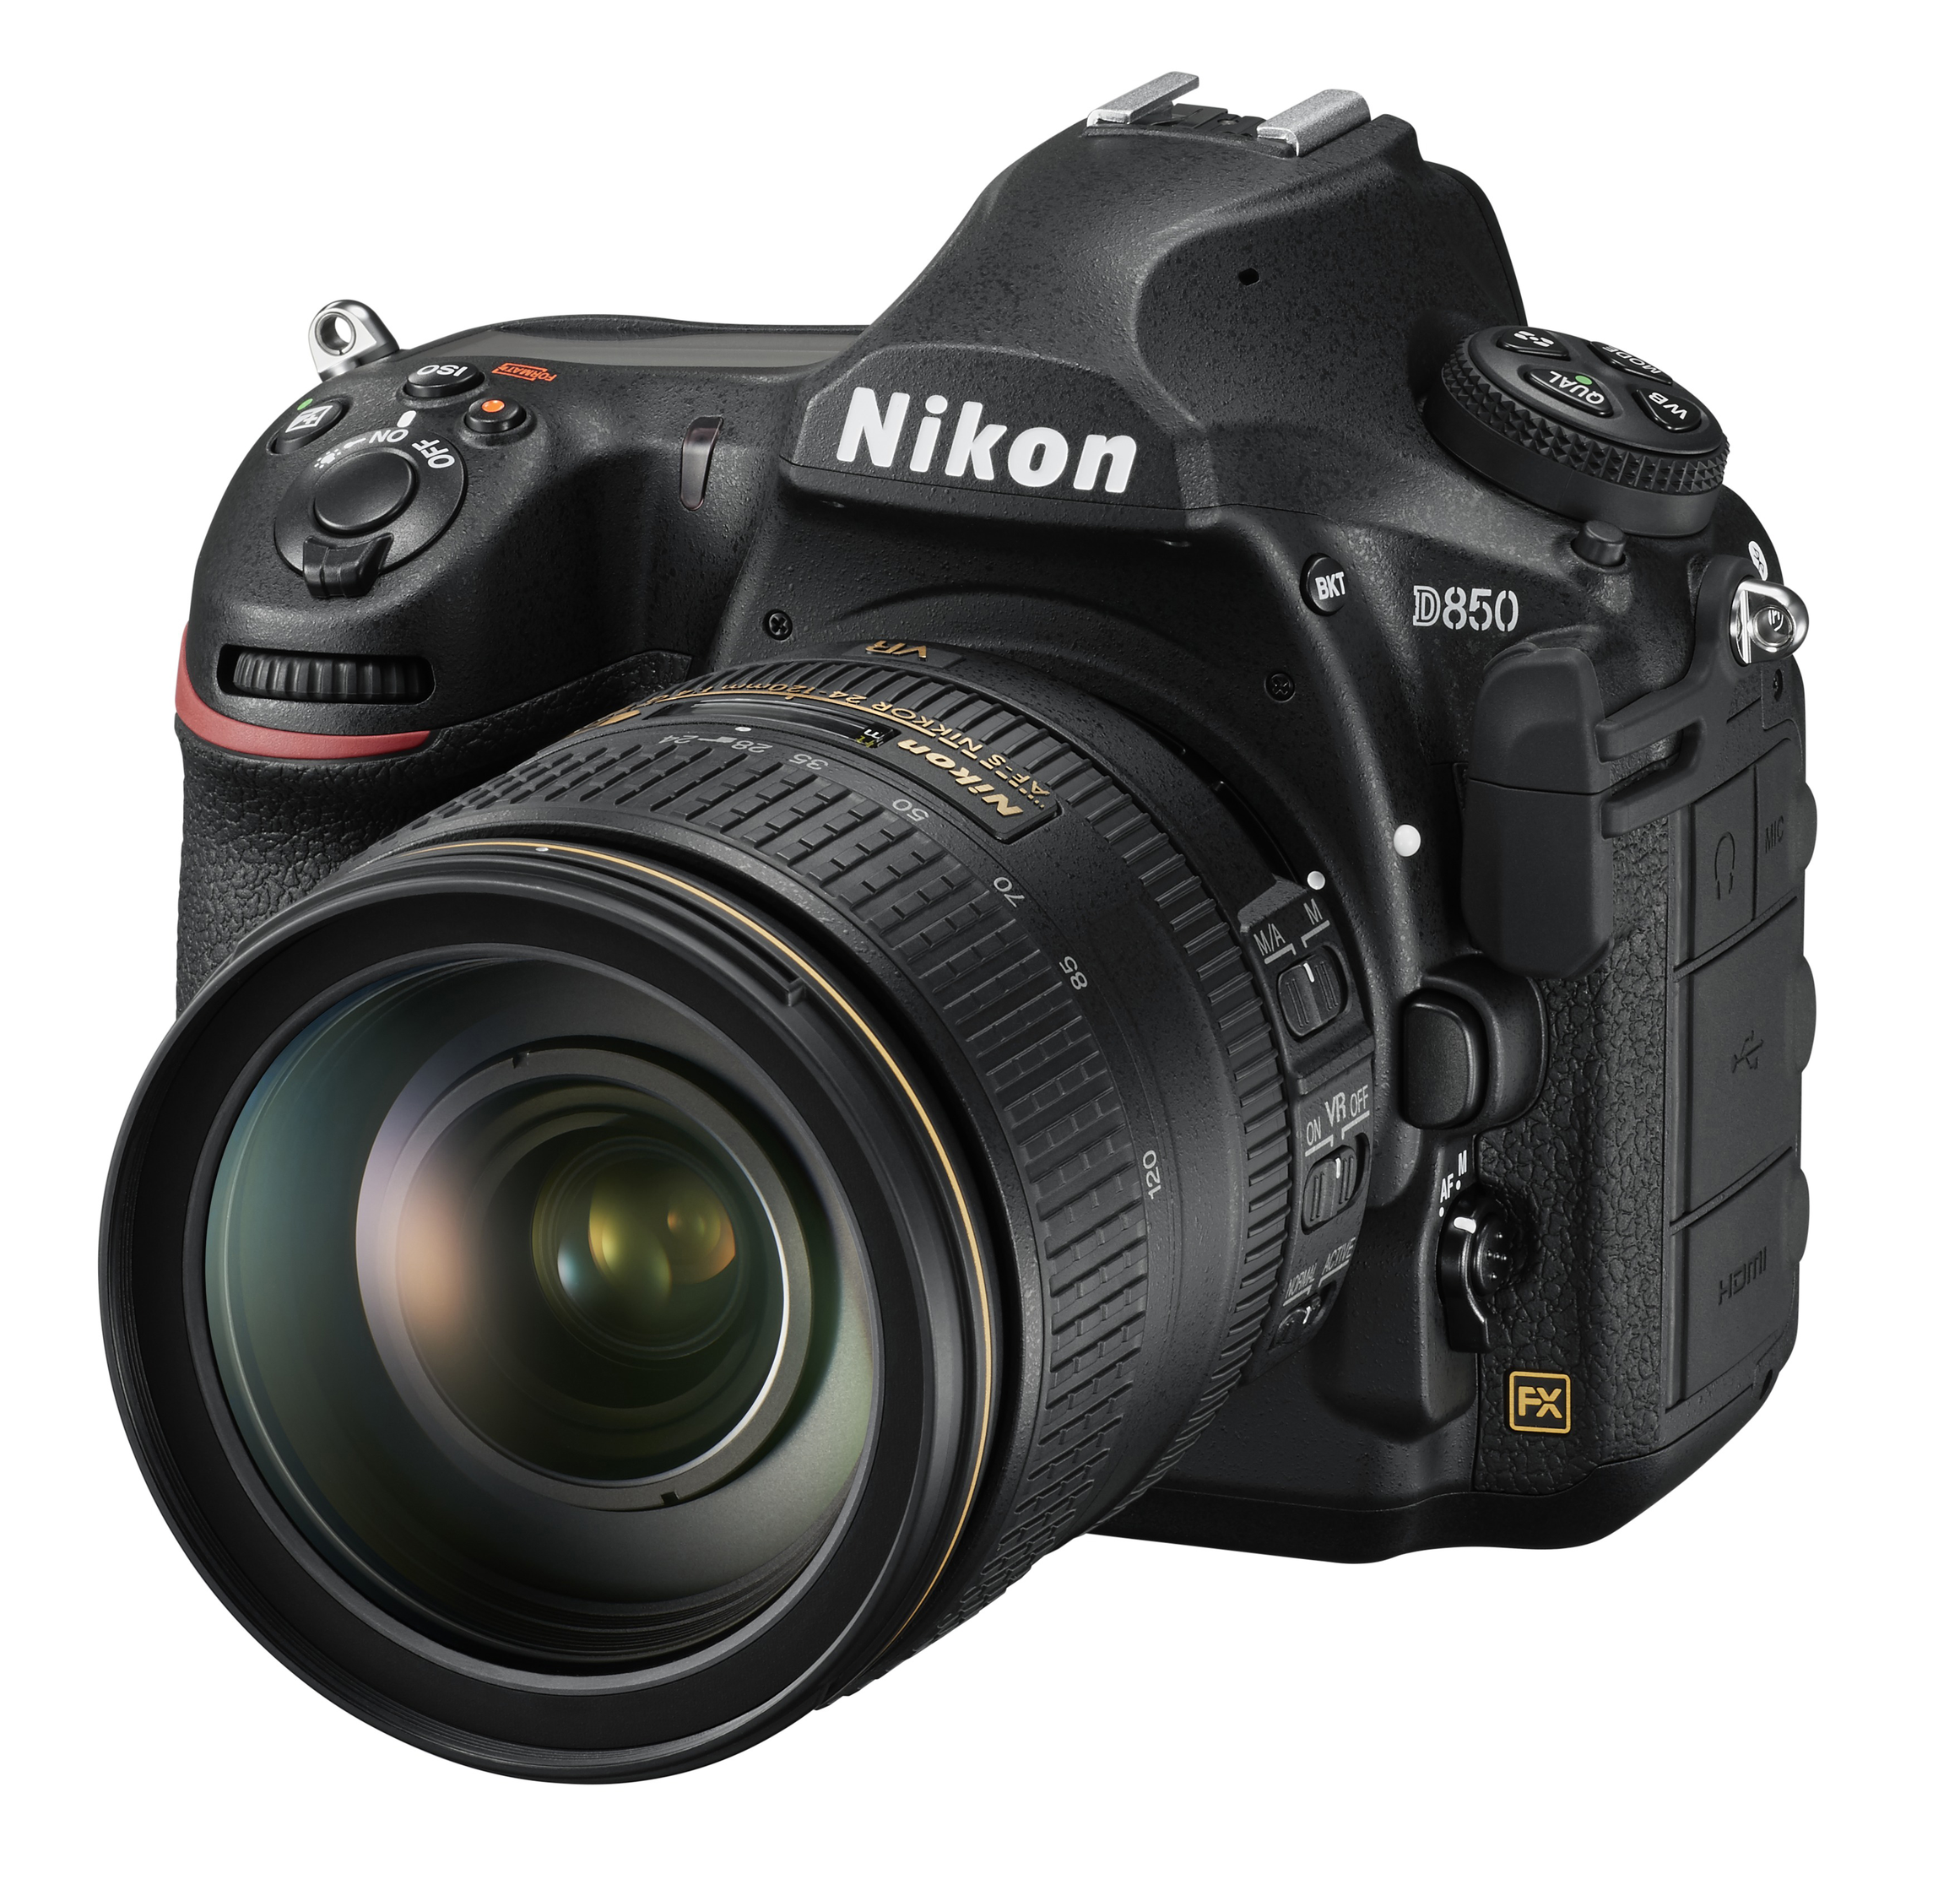 NIKON D850 Kit Spiegelreflexkamera, 45,7 Megapixel, 24-120 mm Objektiv (AF-S, ED, VC), Touchscreen Display, WLAN, Schwarz für 3649€ in Media Markt